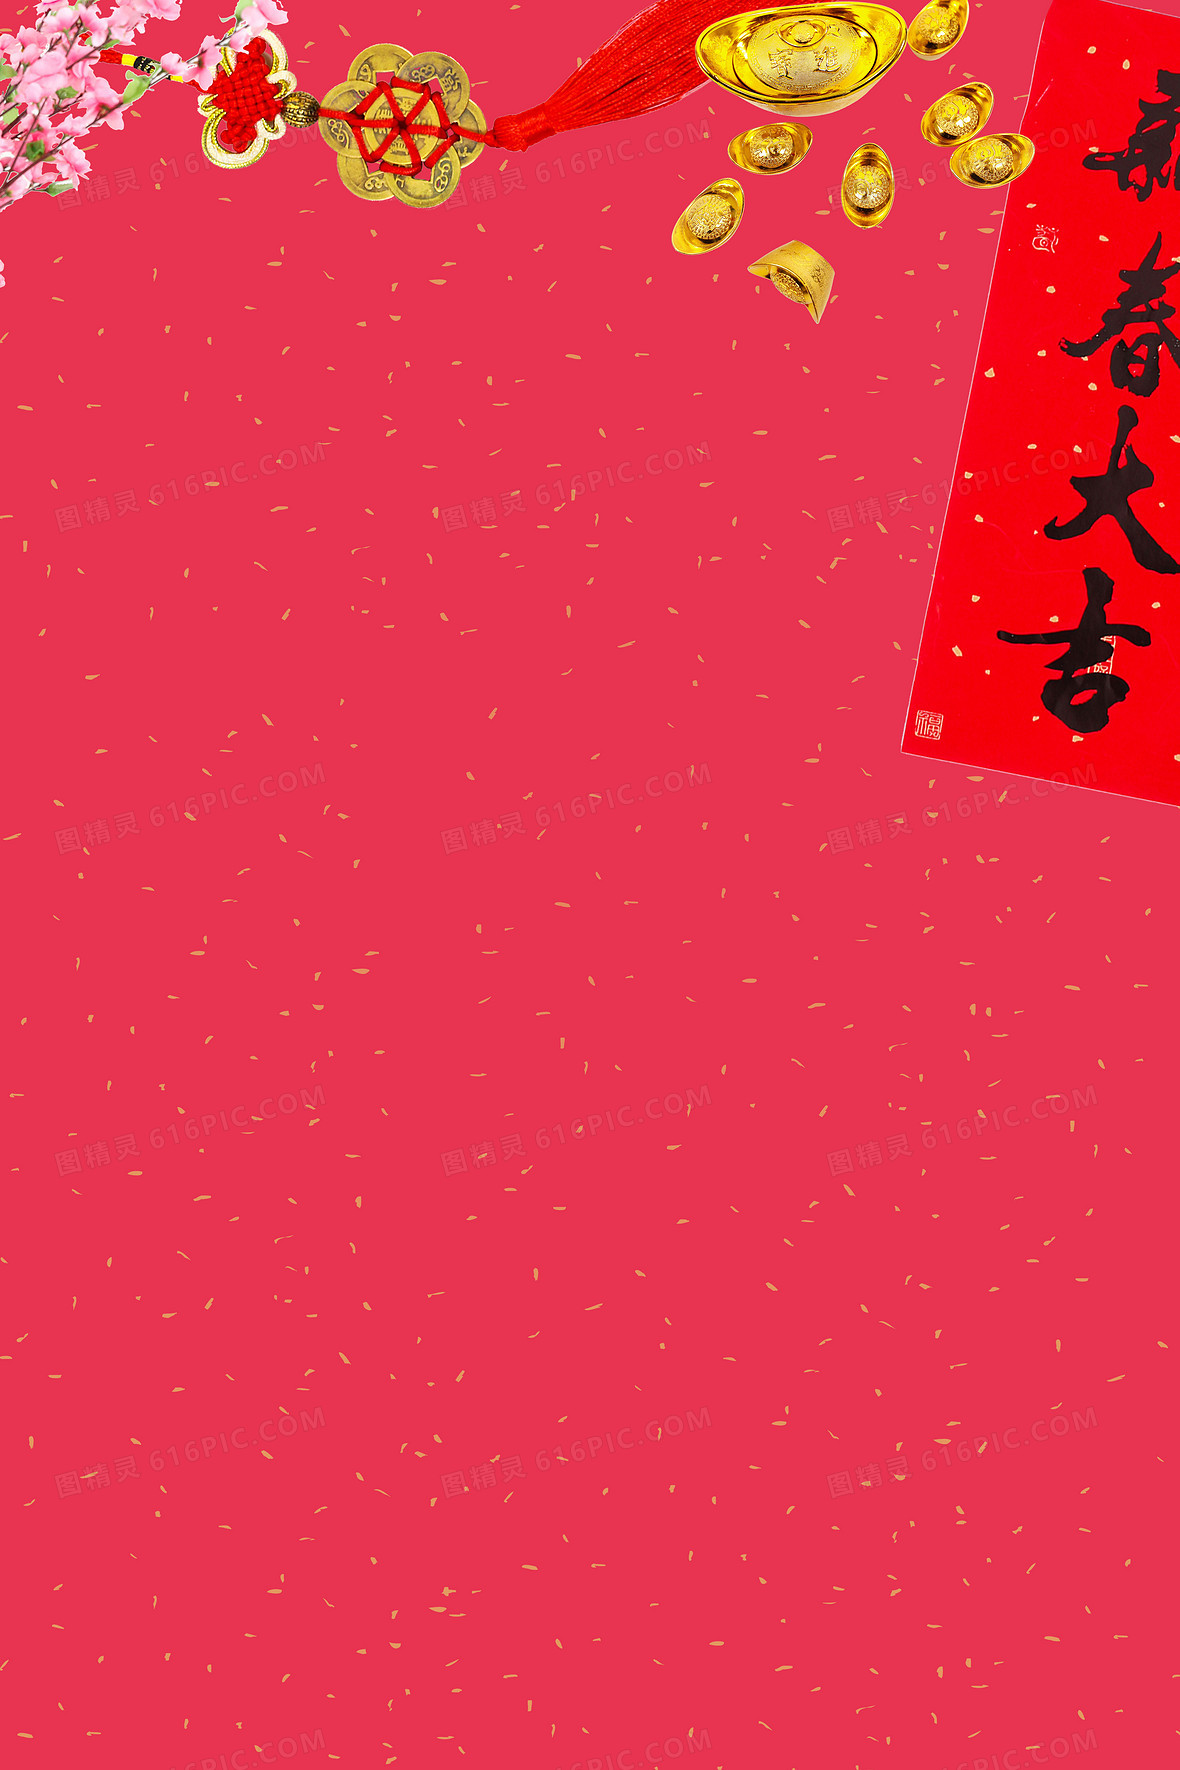 新年红包背景图片下载 免费高清新年红包背景设计素材 图精灵